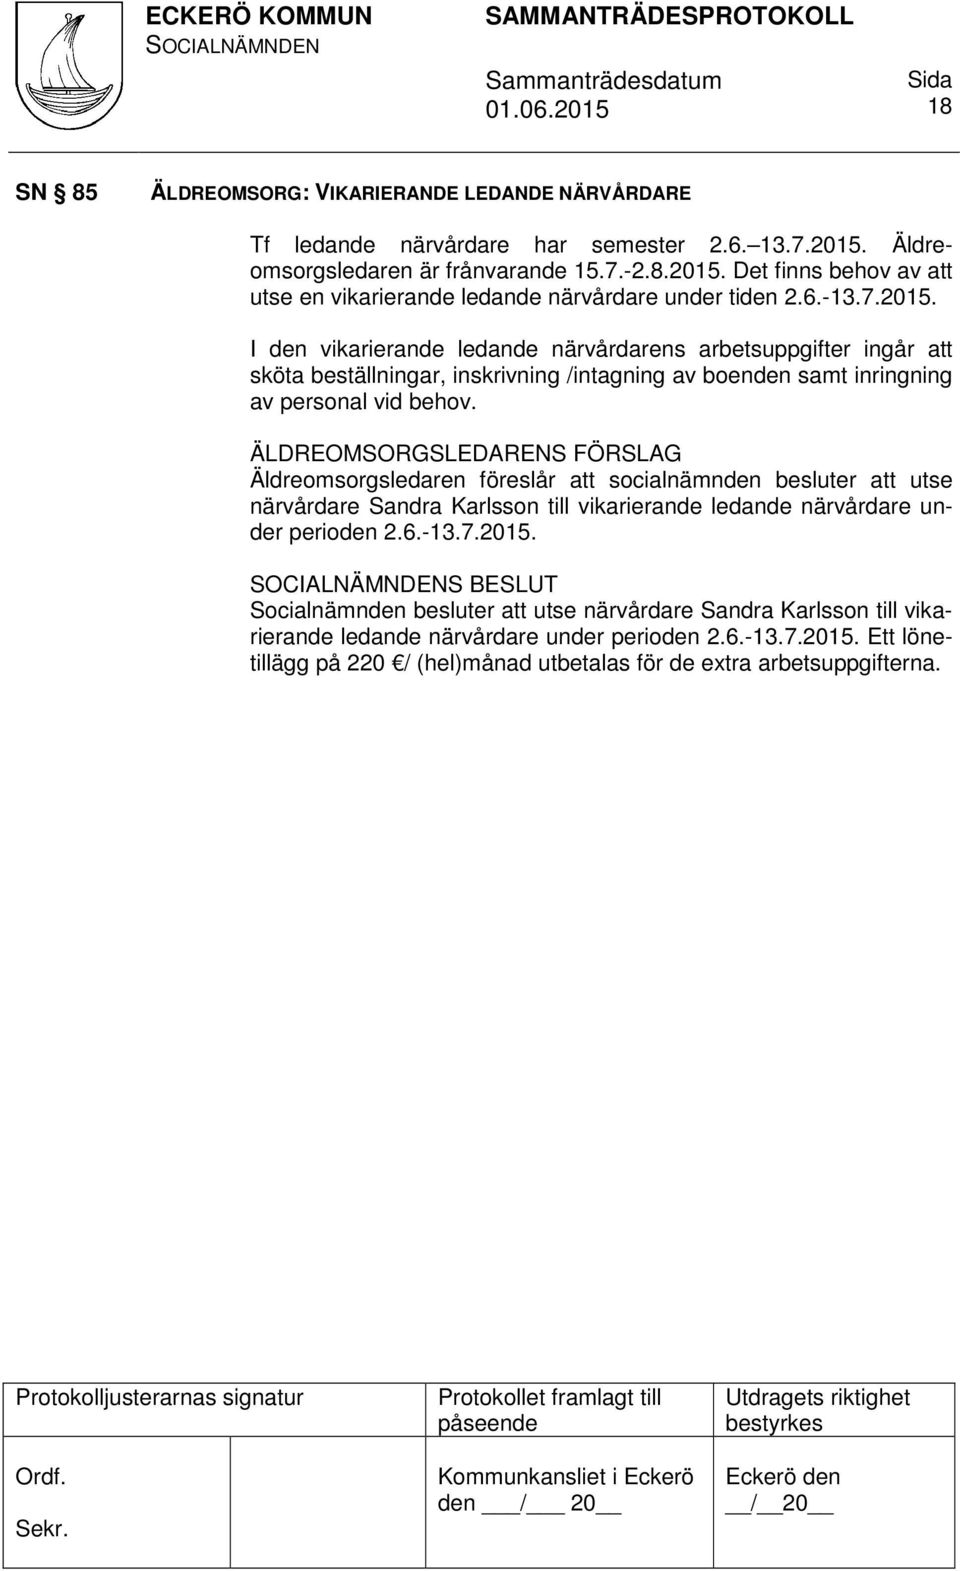 ÄLDREOMSORGSLEDARENS FÖRSLAG Äldreomsorgsledaren föreslår att socialnämnden besluter att utse närvårdare Sandra Karlsson till vikarierande ledande närvårdare under perioden 2.6.-13.7.2015.